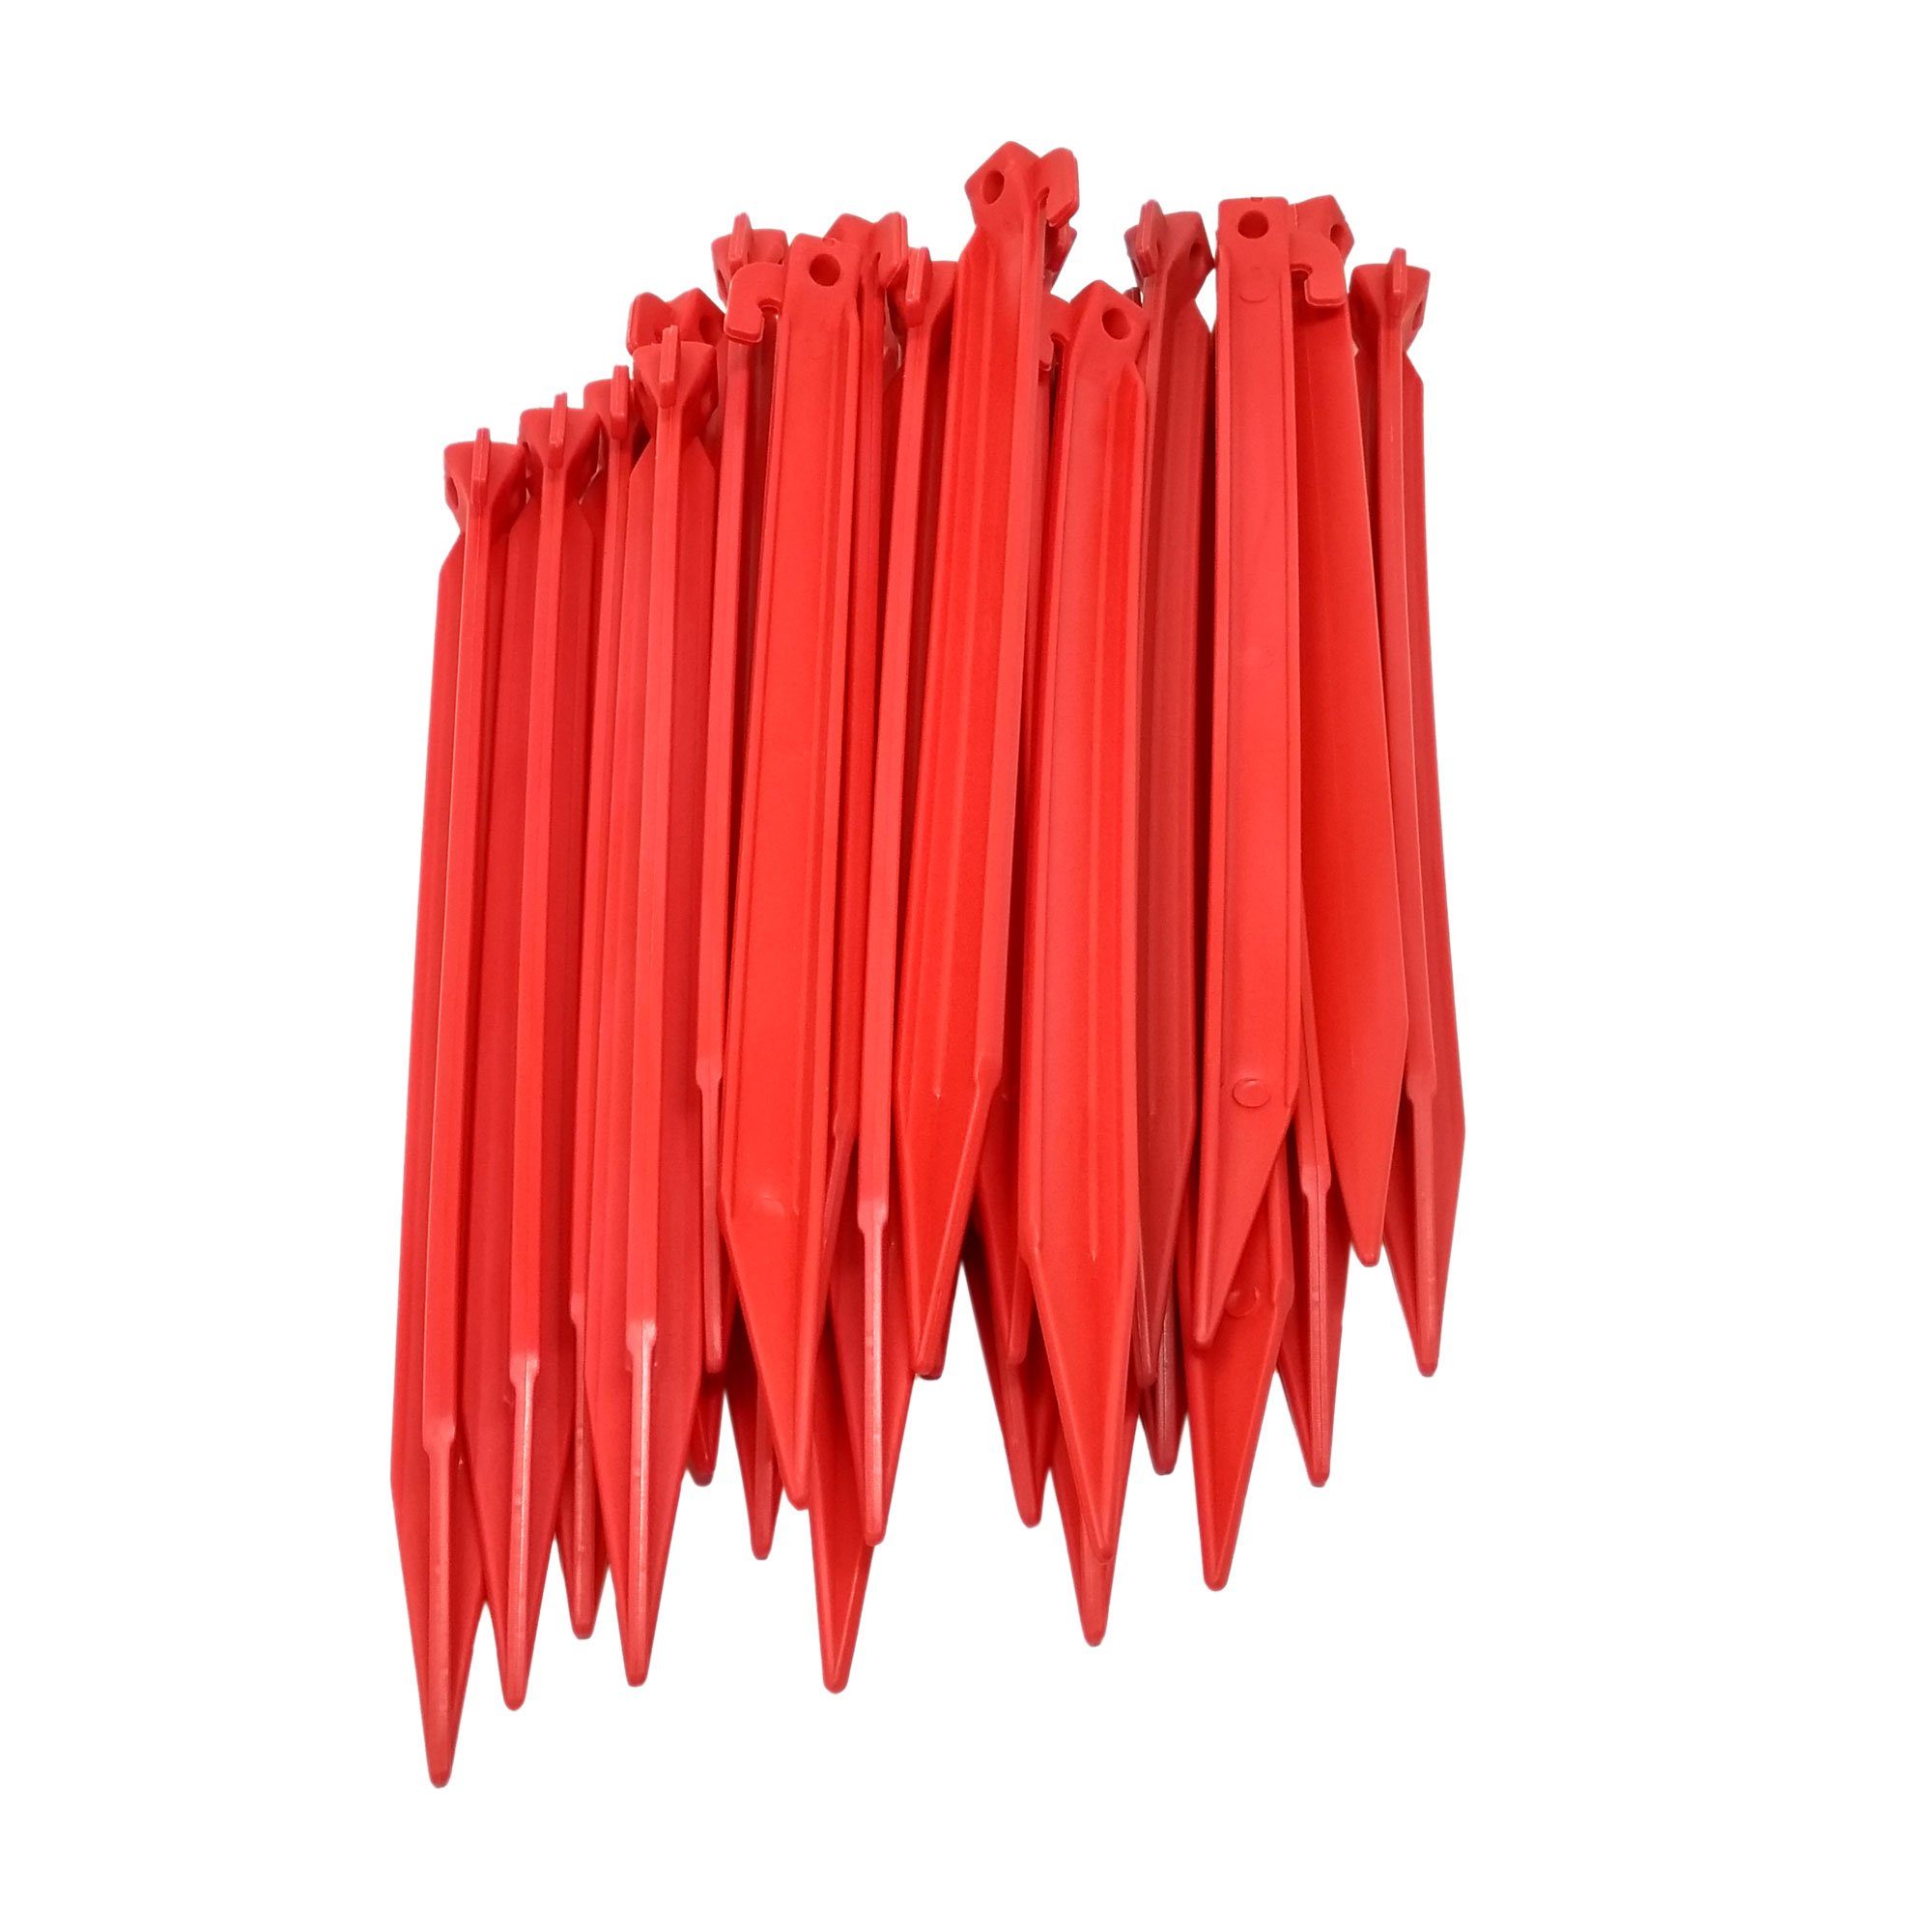 ToCi Zelthering 24x Kunststoff Heringe 30cm Rot Zeltheringe für weiche & sandige Böden